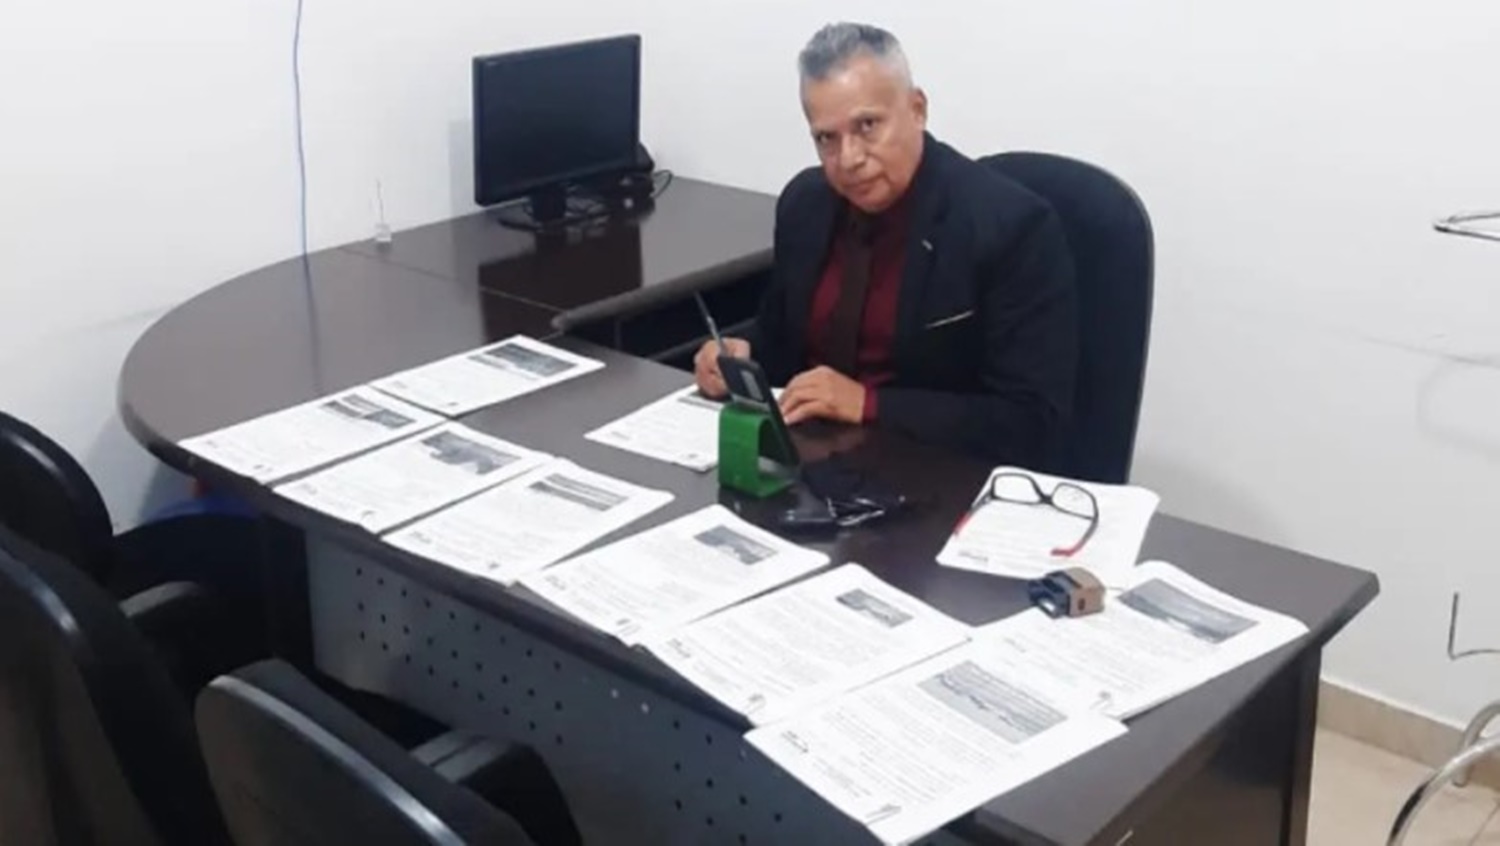 DEMANDAS: Valtinho Canuto realiza pedidos de providências para Semob, Semusb e Sema